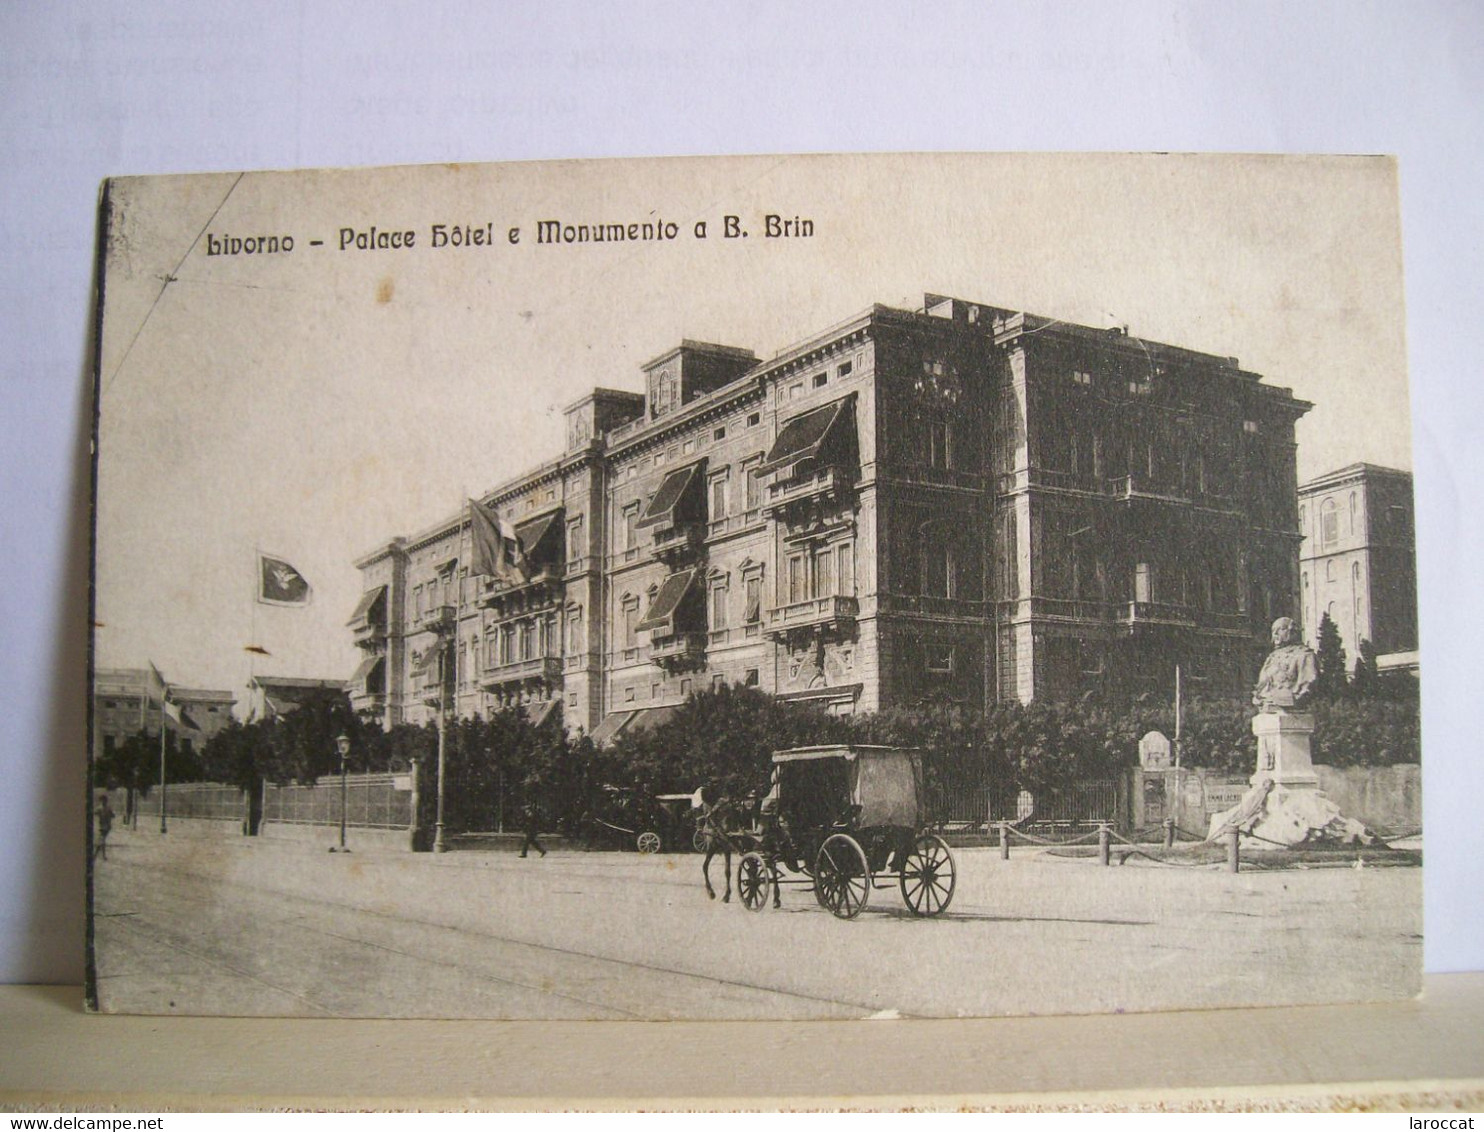 1917 - Livorno - Palace Hotel E Monumento A B. Brin - Albergo - Calesse Carrozza - Ed. A. Mei - Per Oristano -  2 Scans. - Livorno